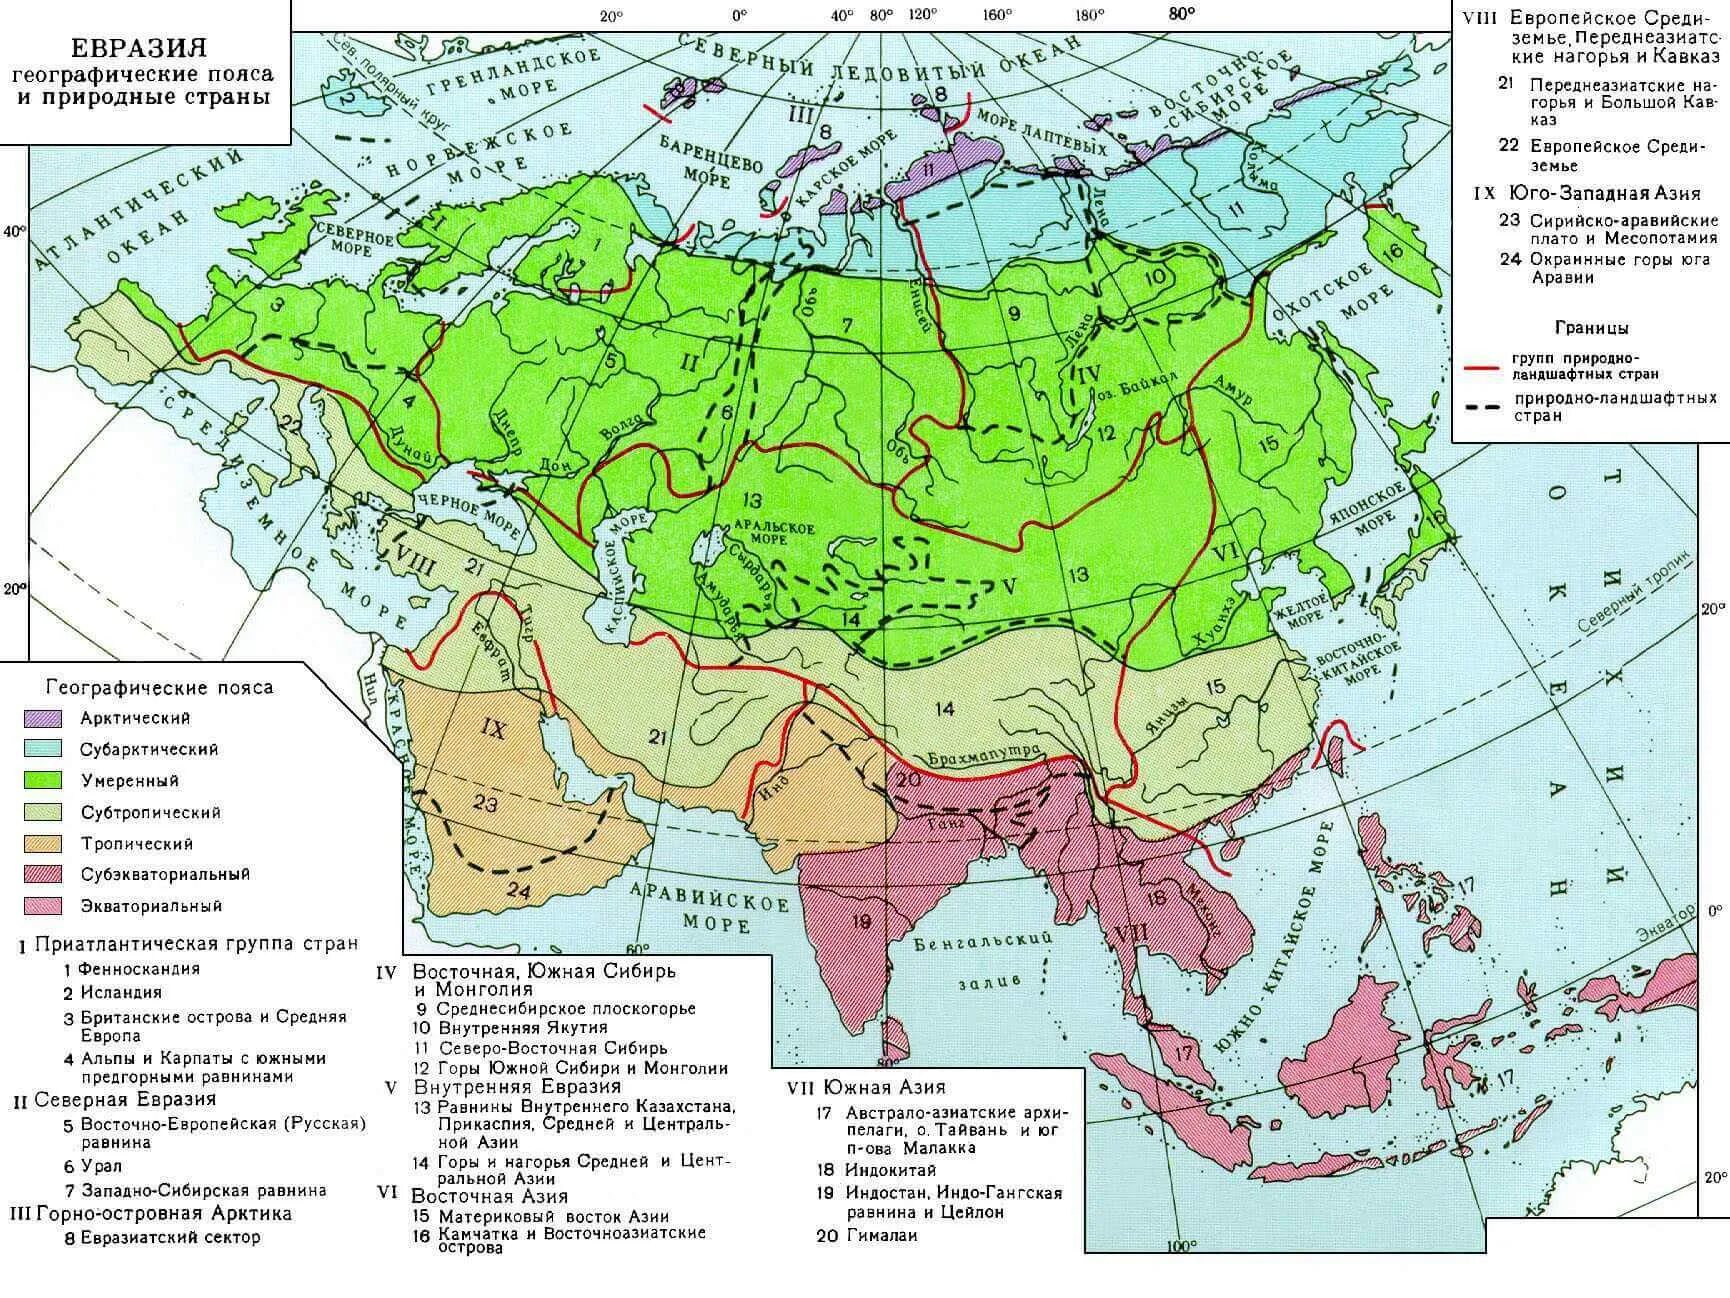 Географические зоны на карте. Карта климатических поясов Евразии. Карта климатических поясов Азии. Карта климатических зон Евразии. Климатическая карта Евразии климатические пояса.